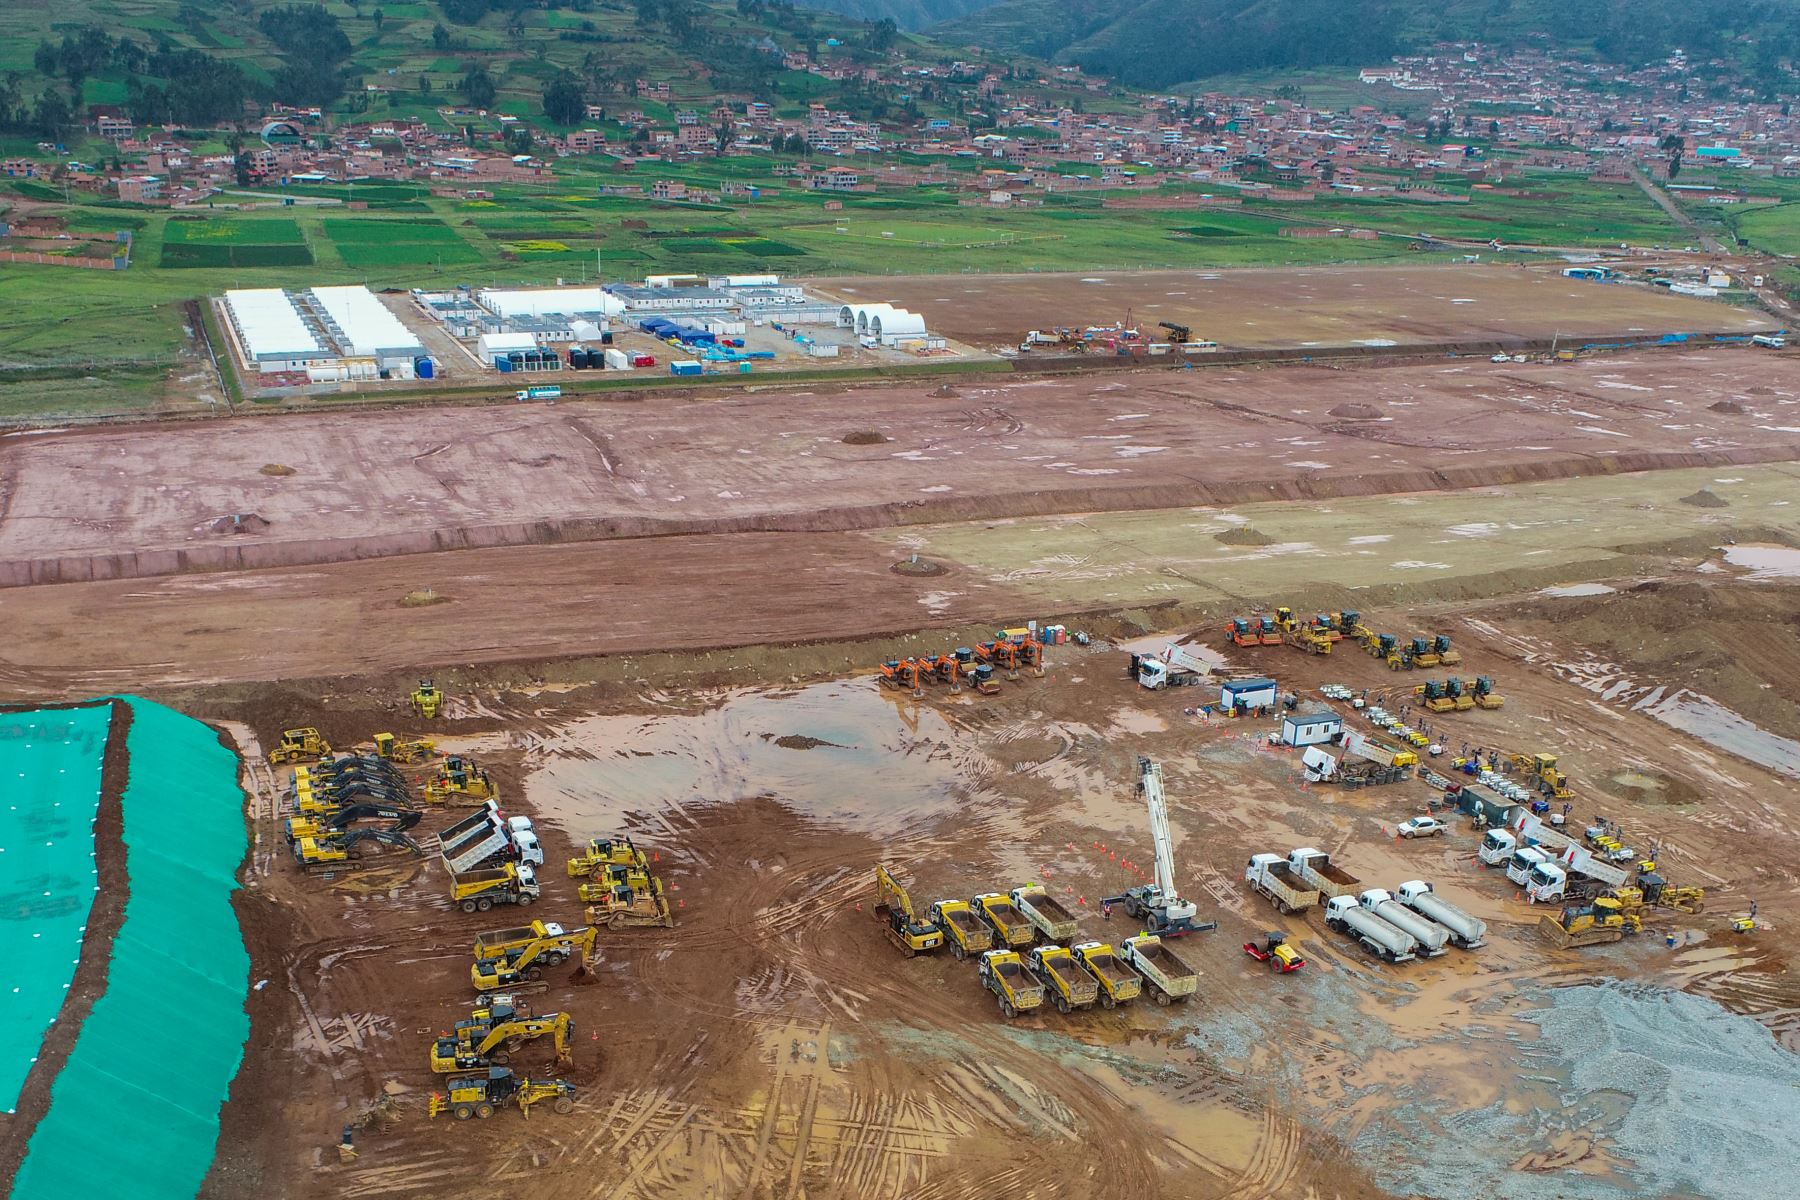 Los trabajos de movimiento de tierras para la construcción del Aeropuerto Internacional de Chinchero, ubicado en la provincia de Urubamba, en Cusco, tienen un avance de 52%. Así lo verificó la viceministra de Transportes, Fabiola Caballero, quien supervisó hoy las labores que se realizan en la zona. Foto: MTC